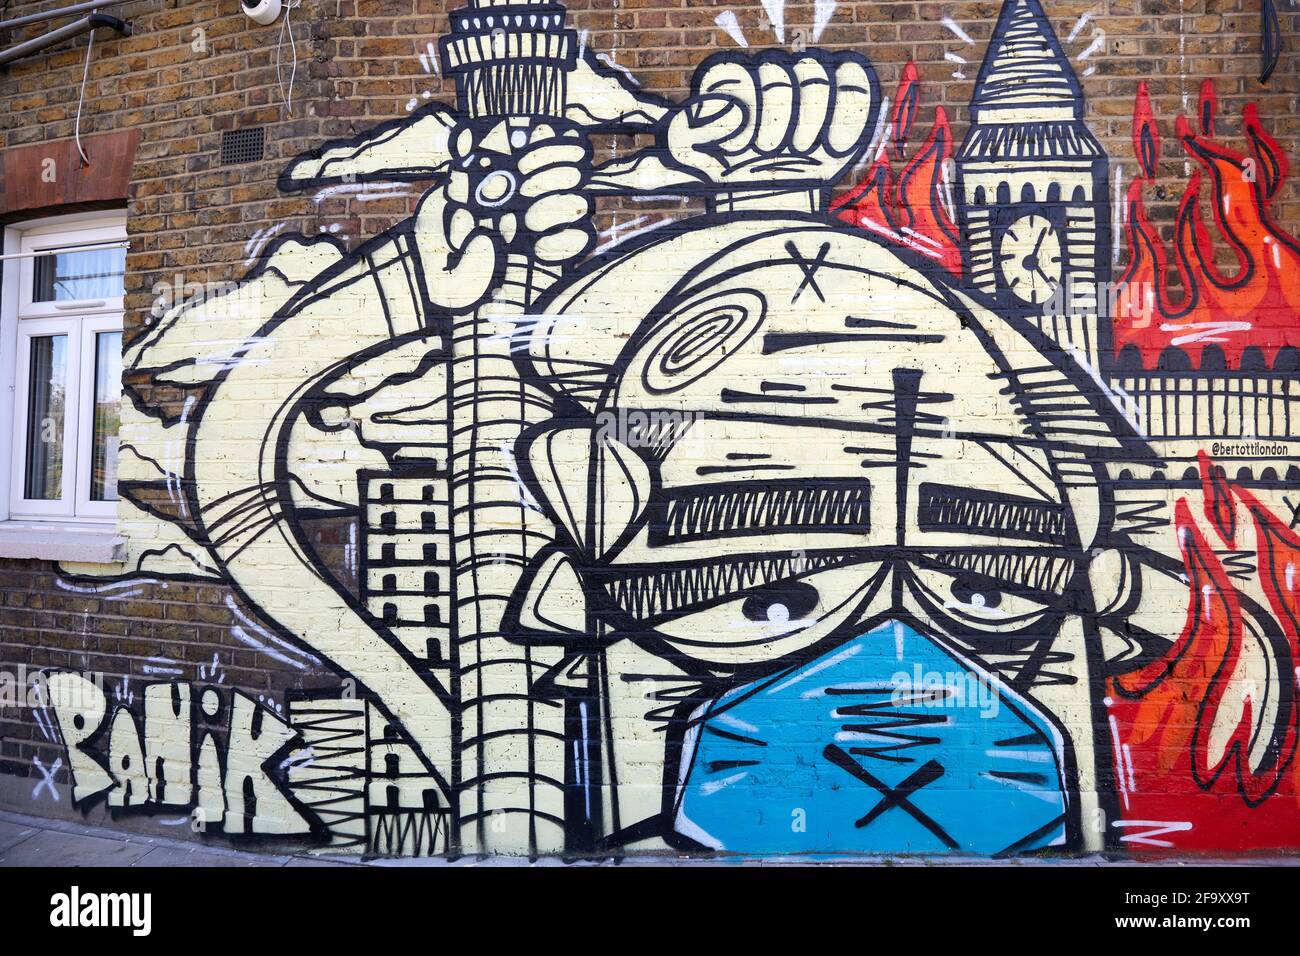 Londra, UK - 18 Apr 2021: Un murale di strada, disegnato durante la pandemia del coronavirus dall'artista di graffiti Panik, sulla parete laterale di un negozio di ghiaccio. Foto Stock